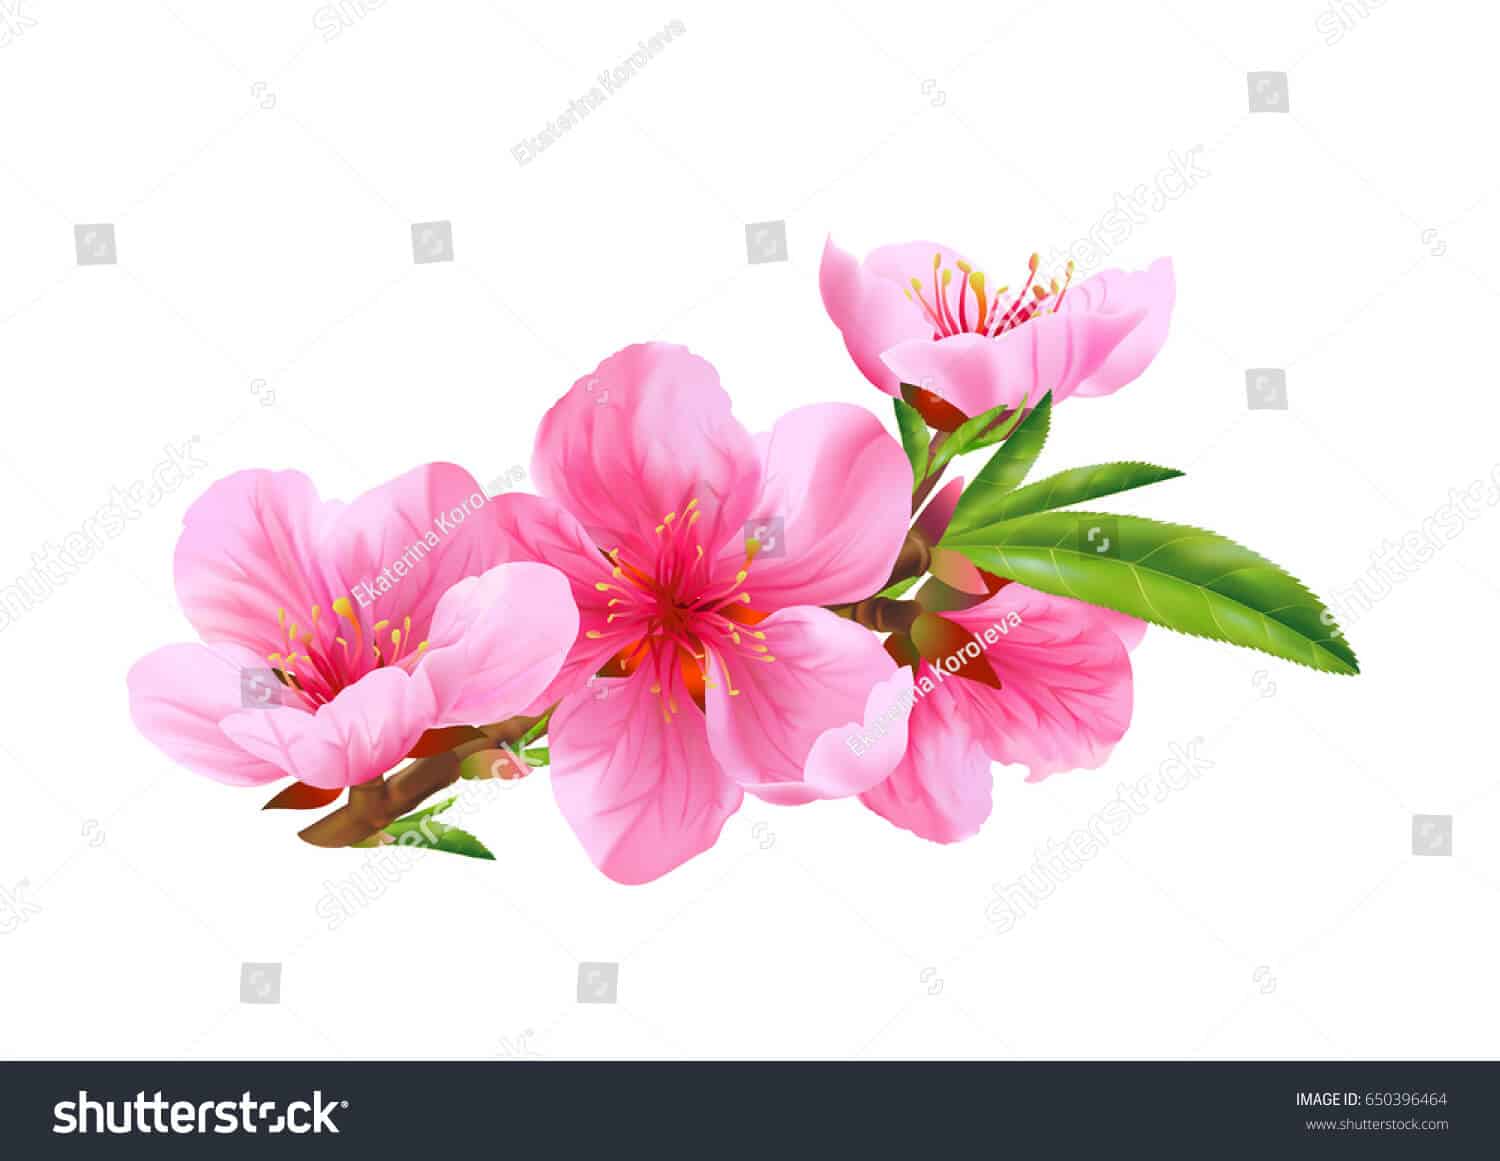 100 ngàn hình ảnh hoa đào chất lượng cao trên Shutterstock